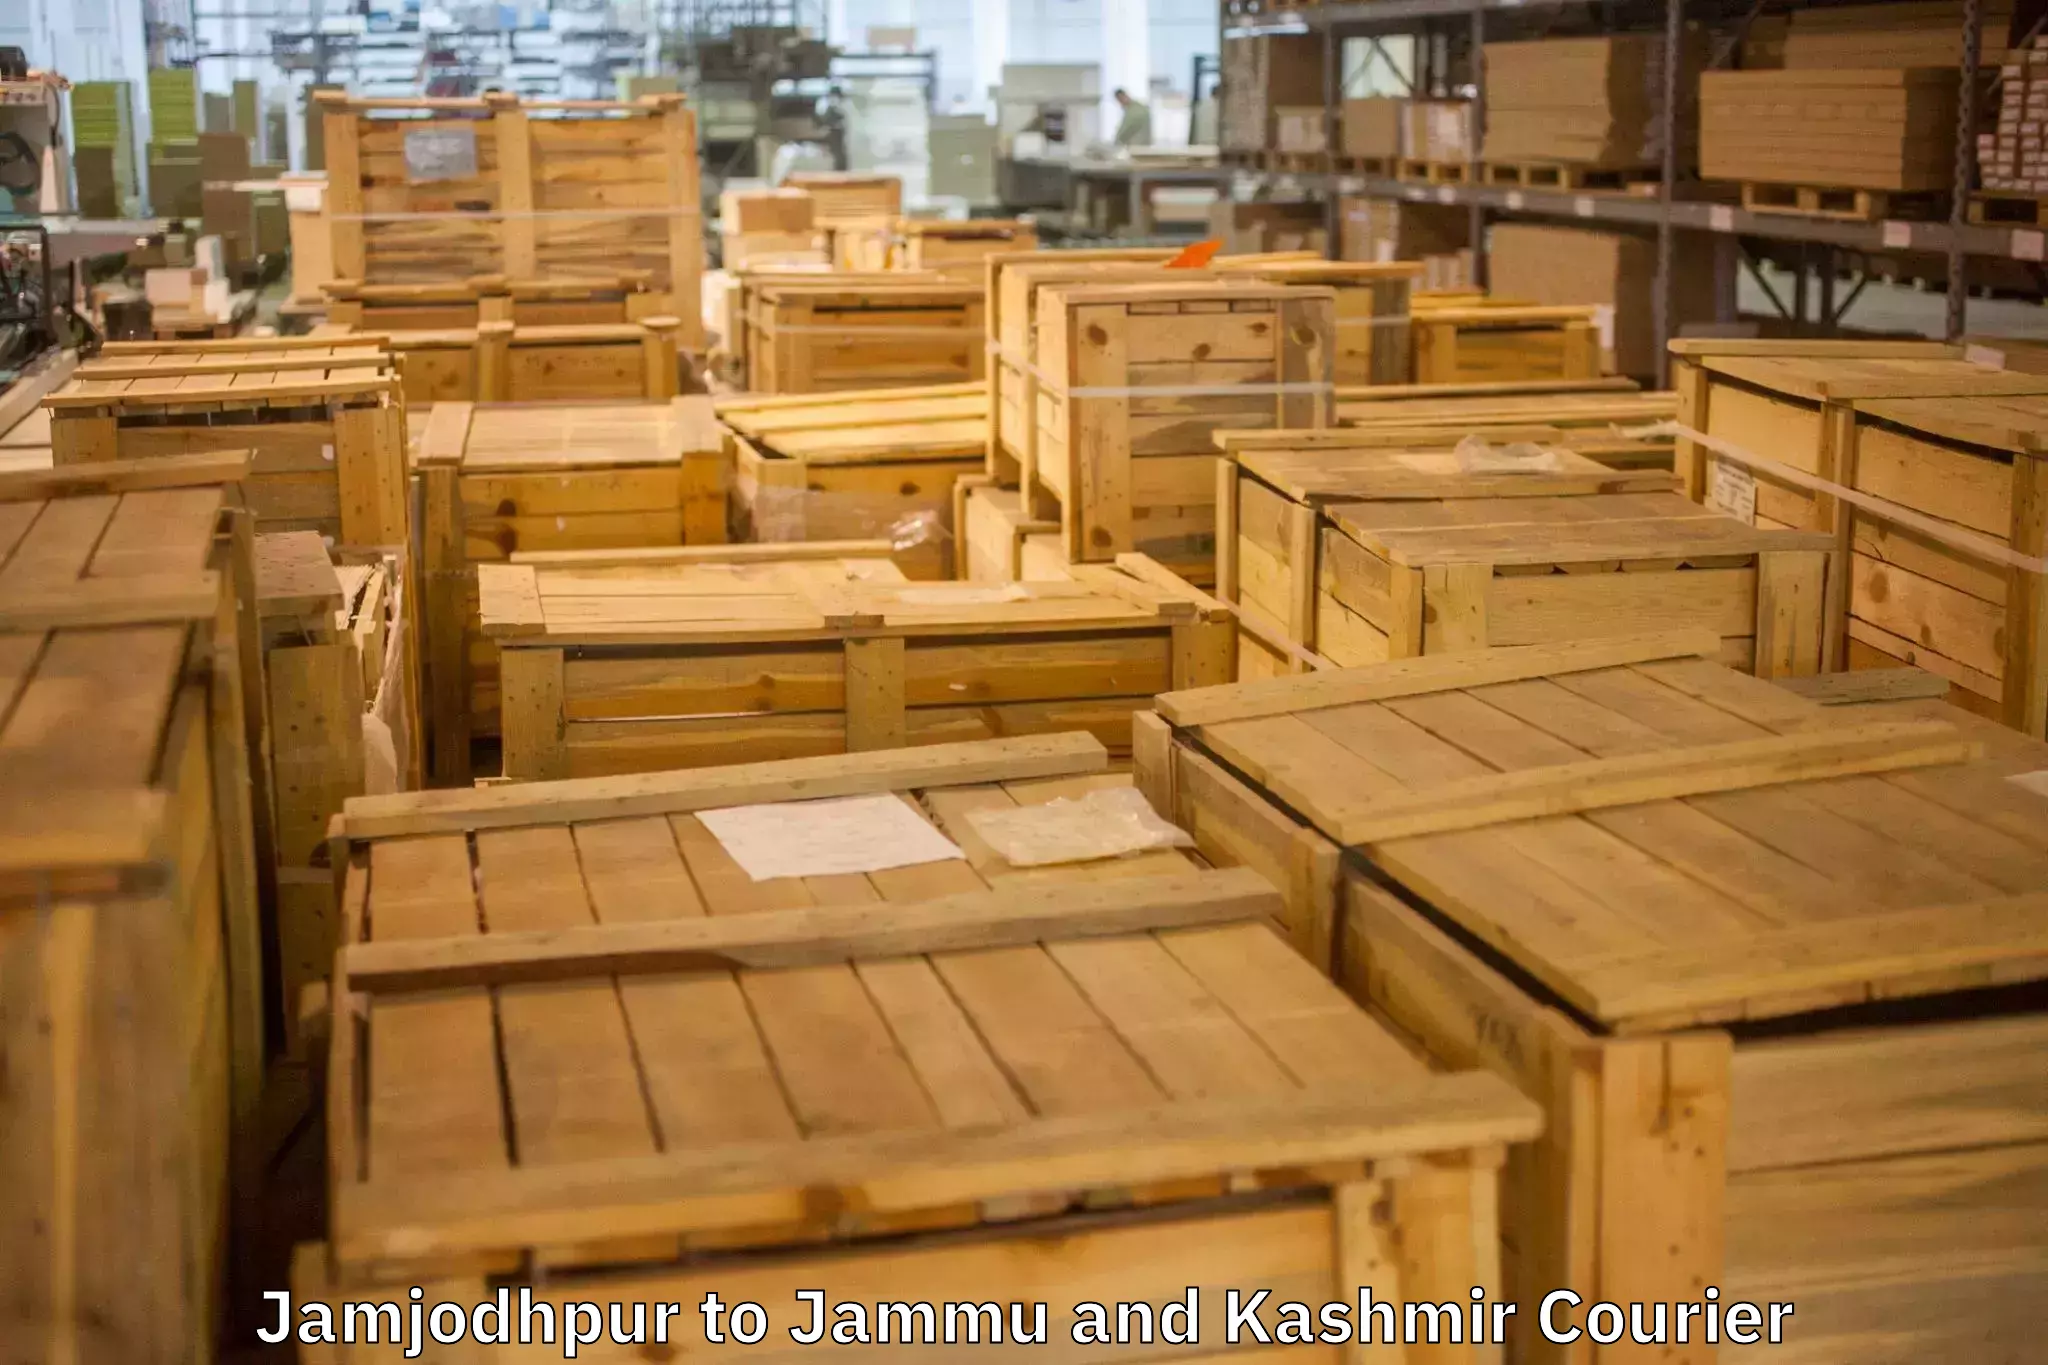 Quality moving company Jamjodhpur to Doda